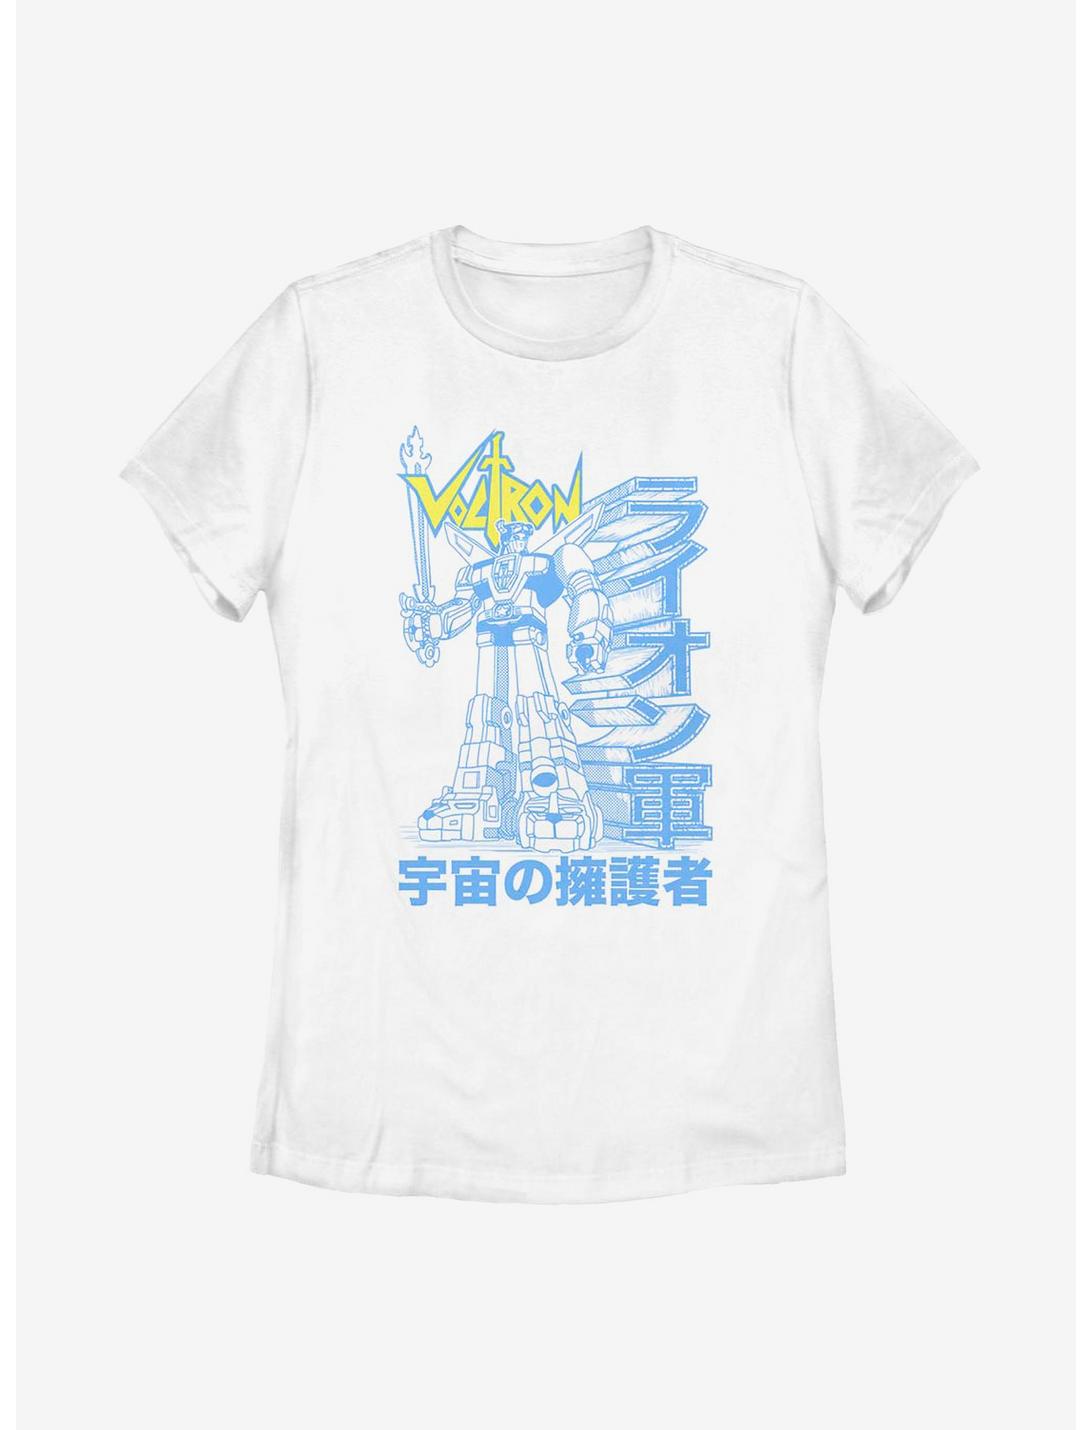 Voltron Lion Force Womens T-Shirt, WHITE, hi-res